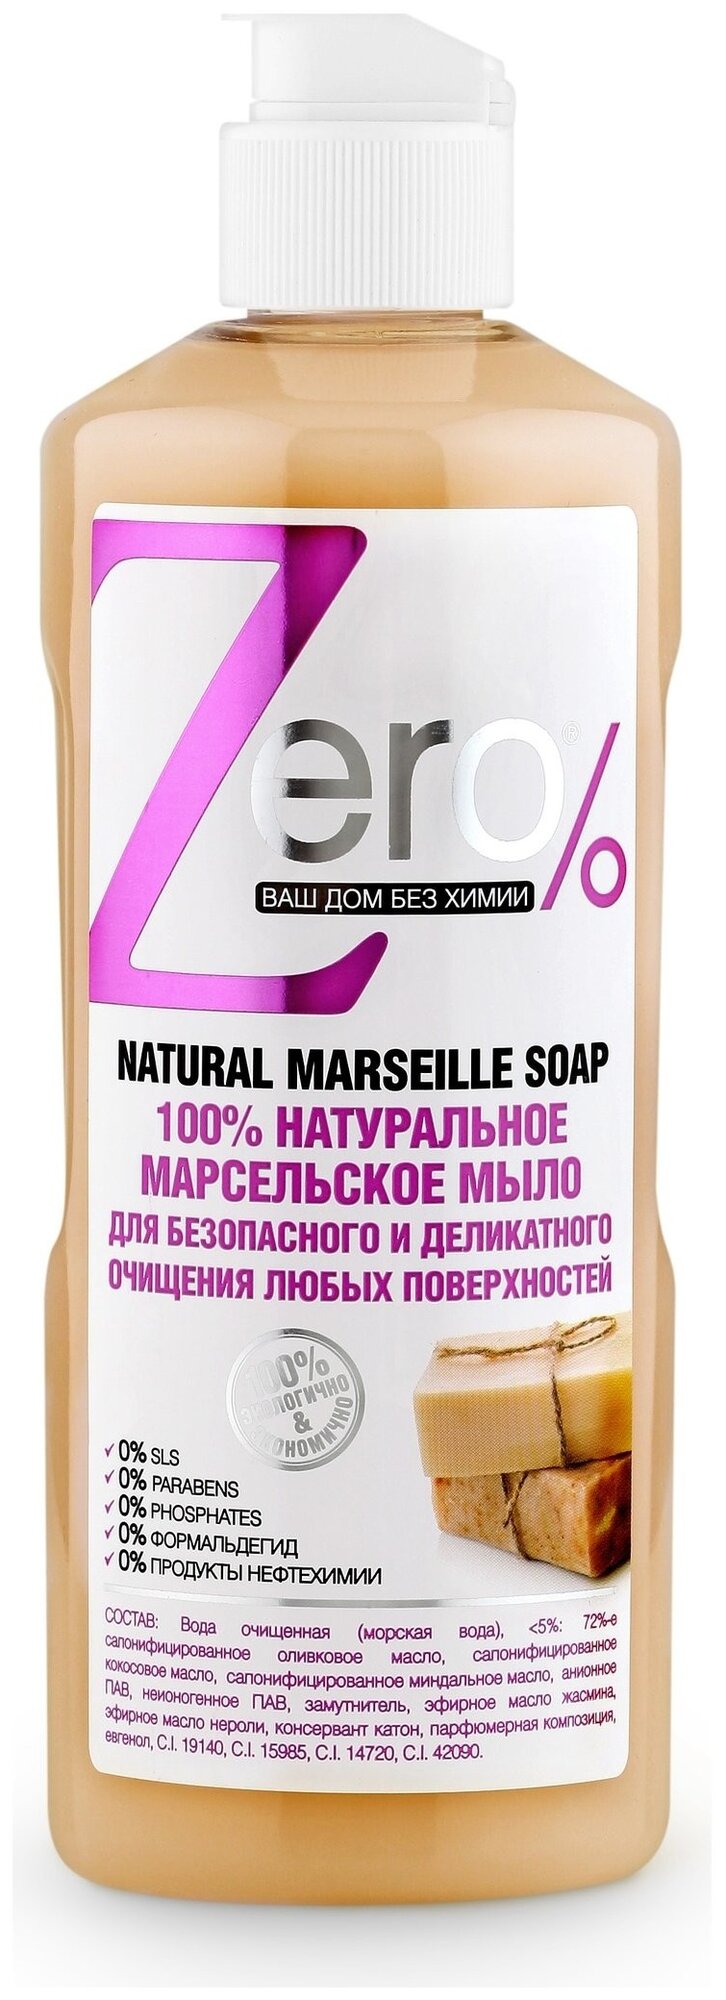 Zero% мыло для очищения всех поверхностей Марсельское 0.5 л